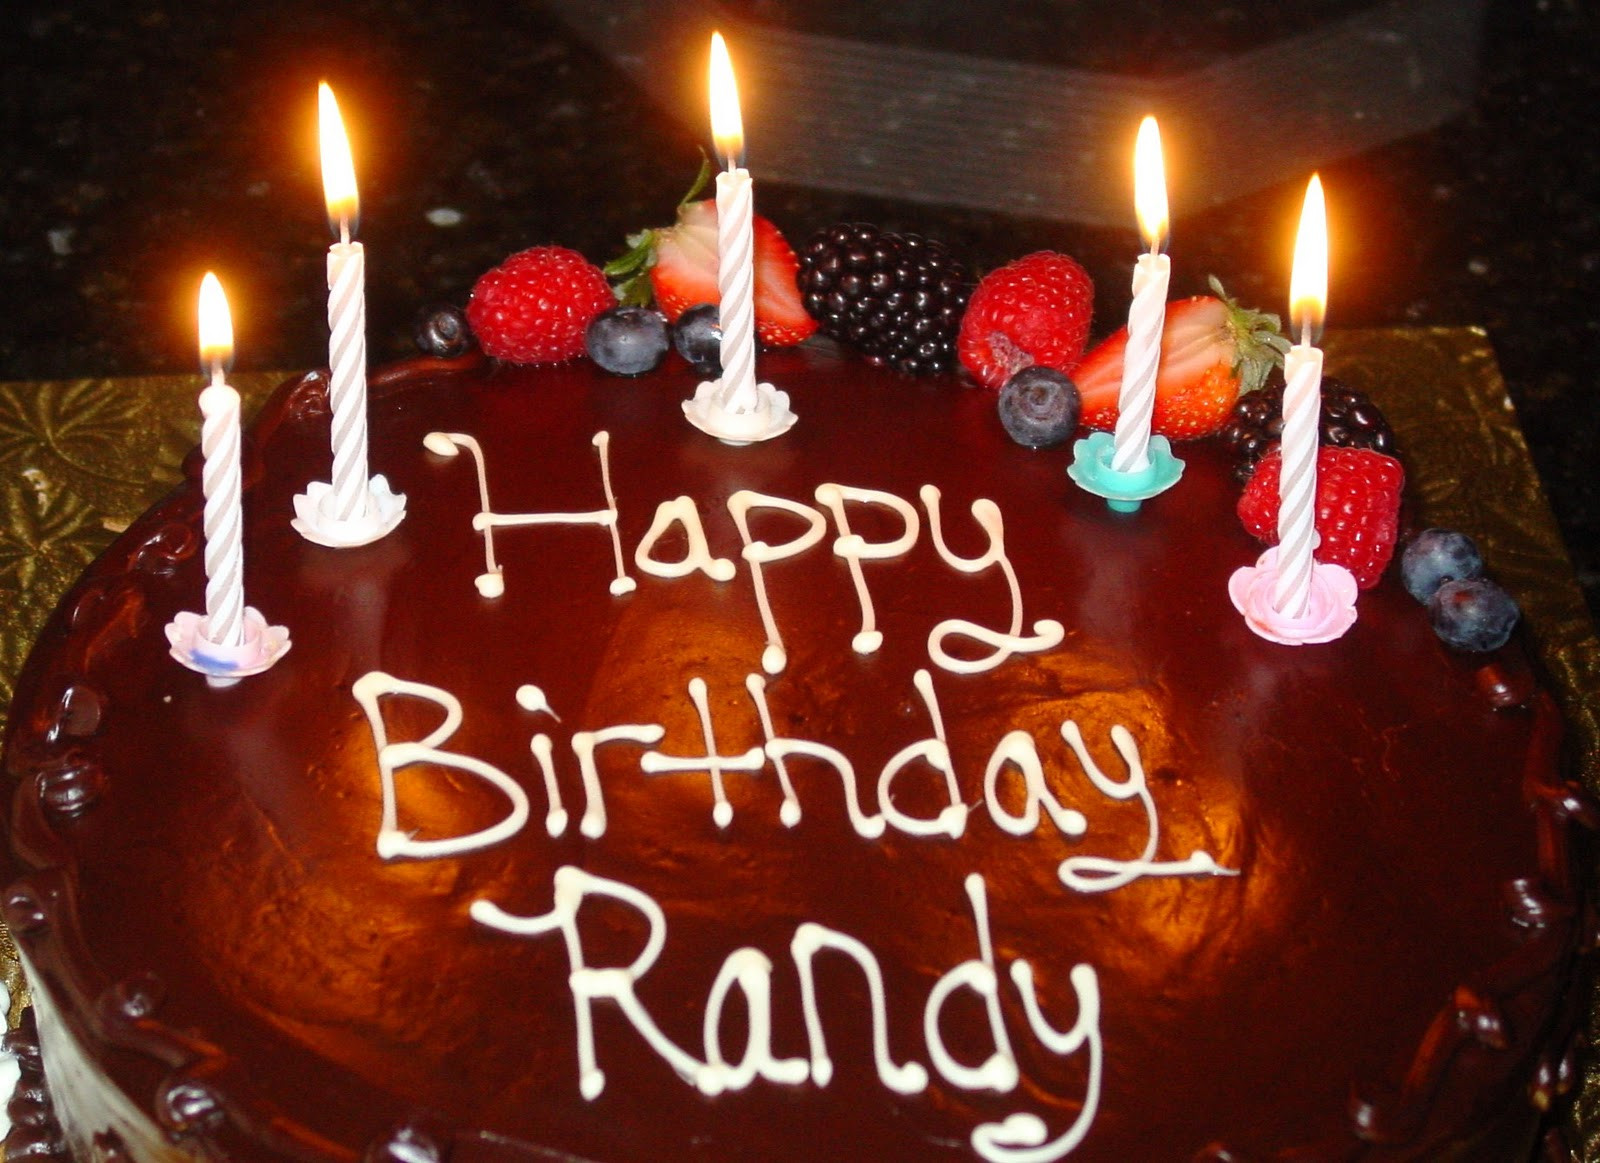 Happy birthday randy images